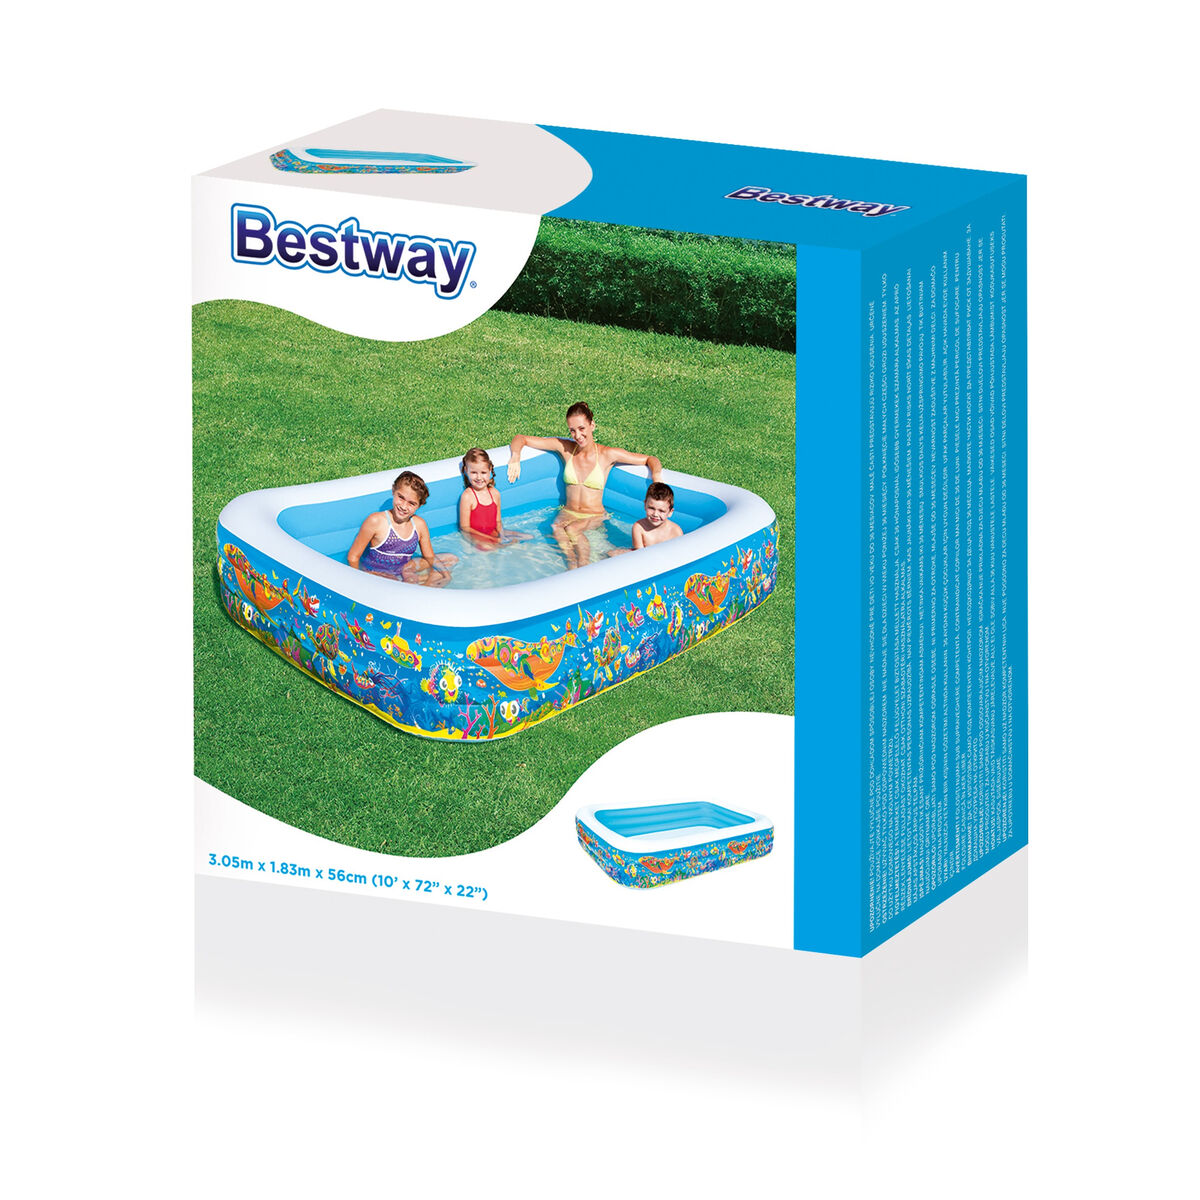 Aufblasbares Planschbecken für Kinder Bestway Bunt 305 x 183 x 56 cm blumig